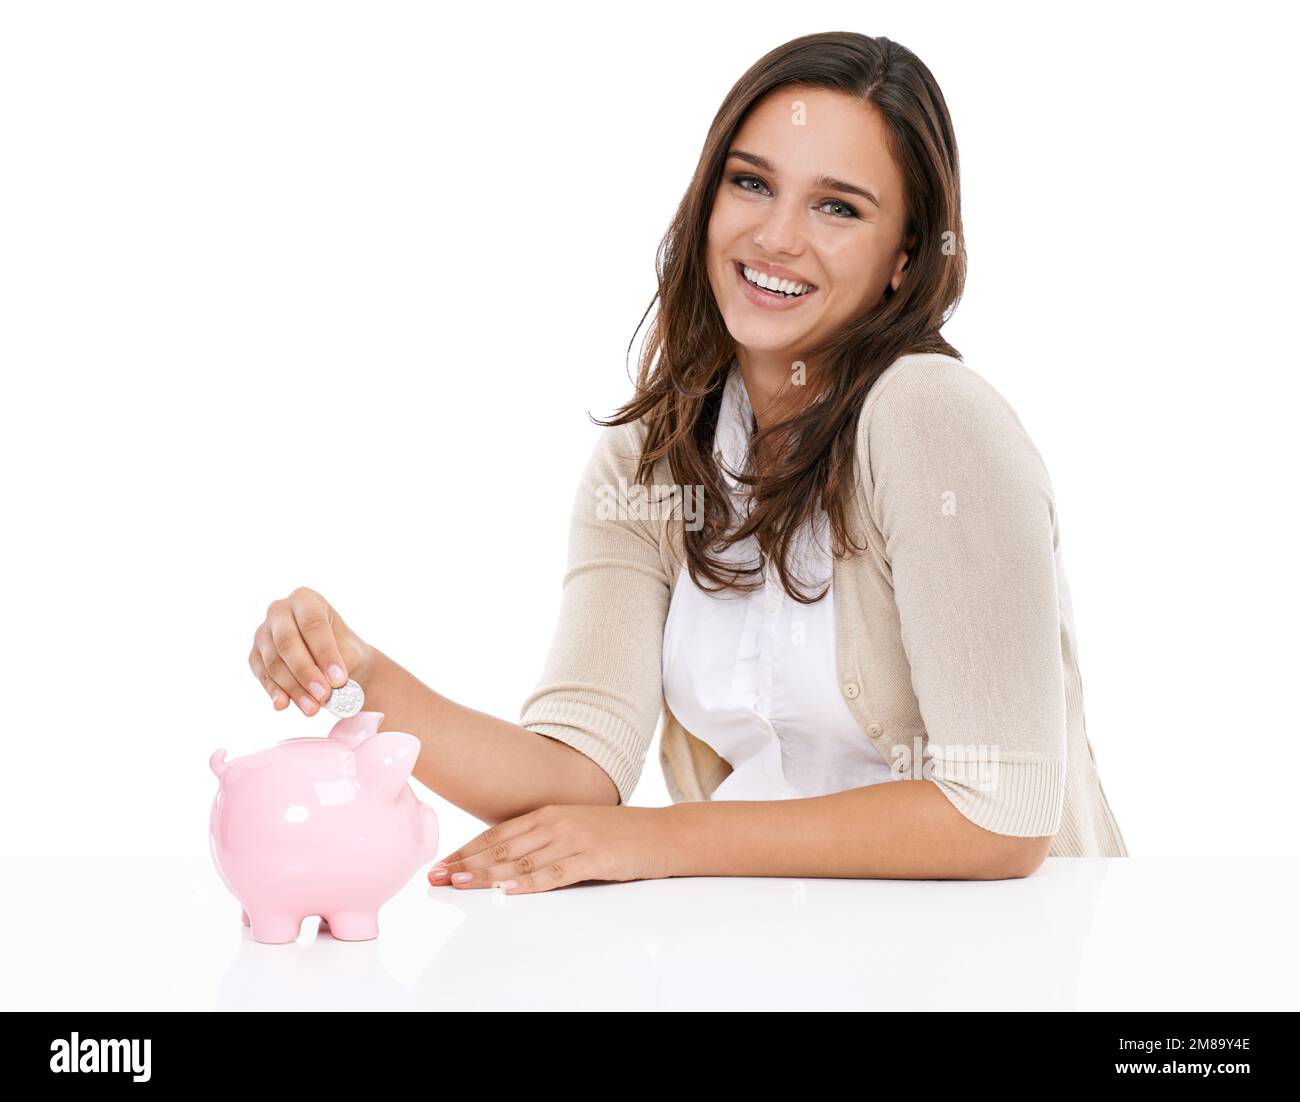 Geldbank, Ersparnisse und Porträt einer Frau, die sich über Sparen, Bankgeschäfte und Investitionen für die Zukunft freut. Weiblich mit einem Lächeln isoliert auf weißem Hintergrund Stockfoto